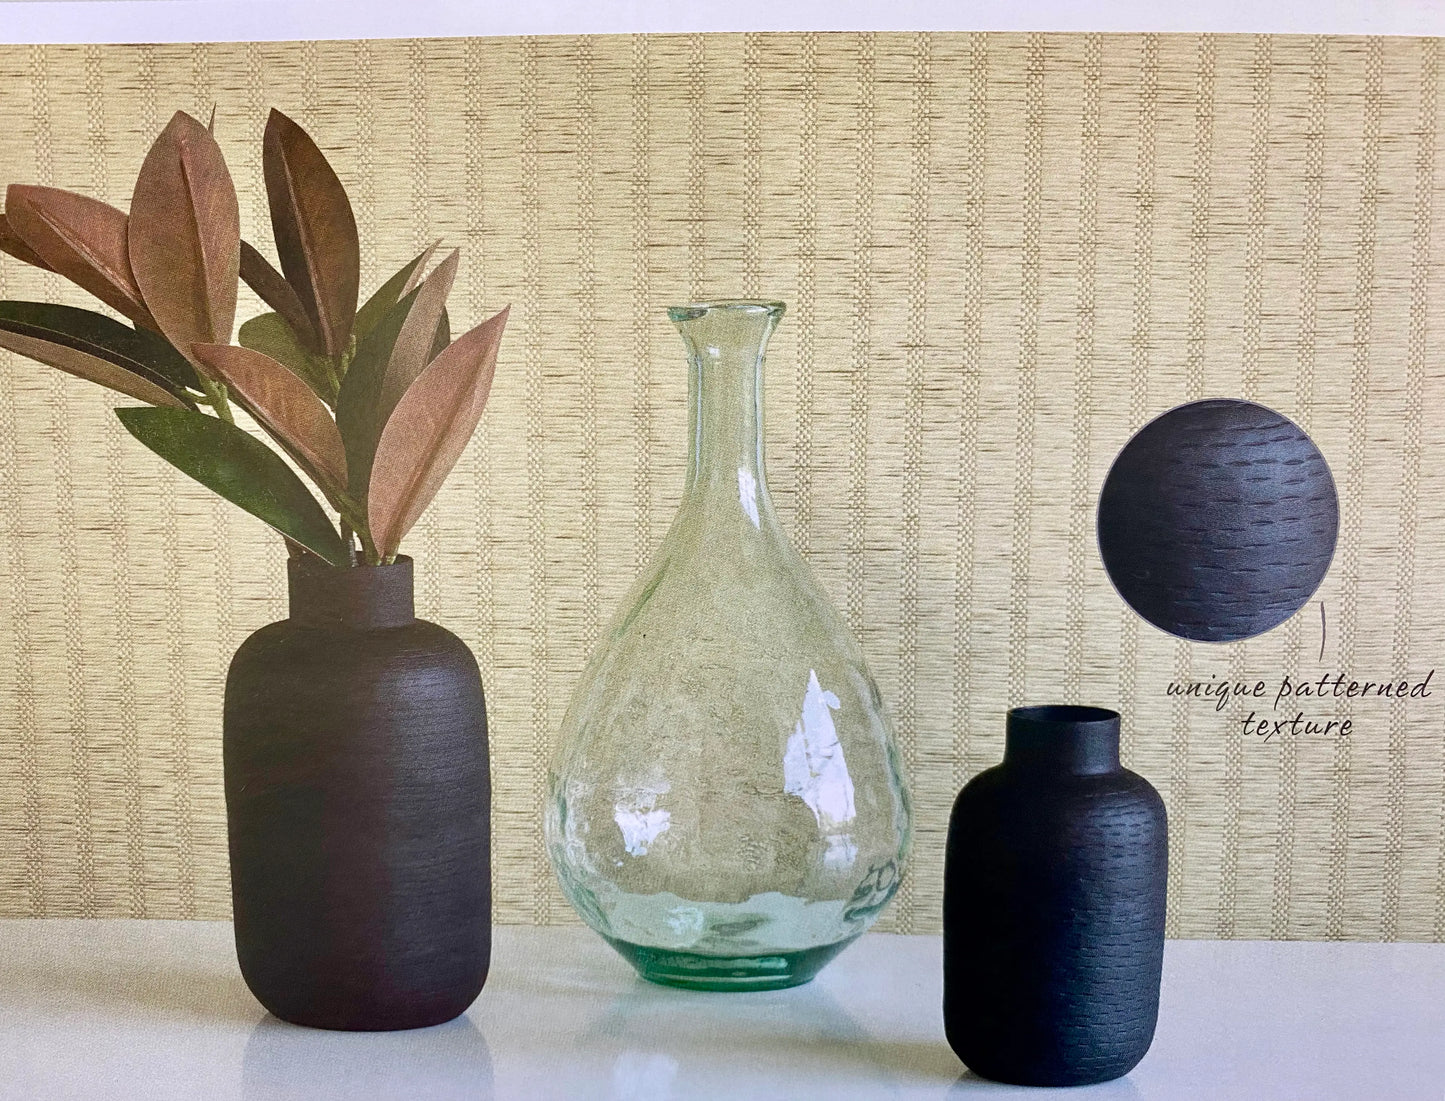 Black Textured Vase - Large Oblong